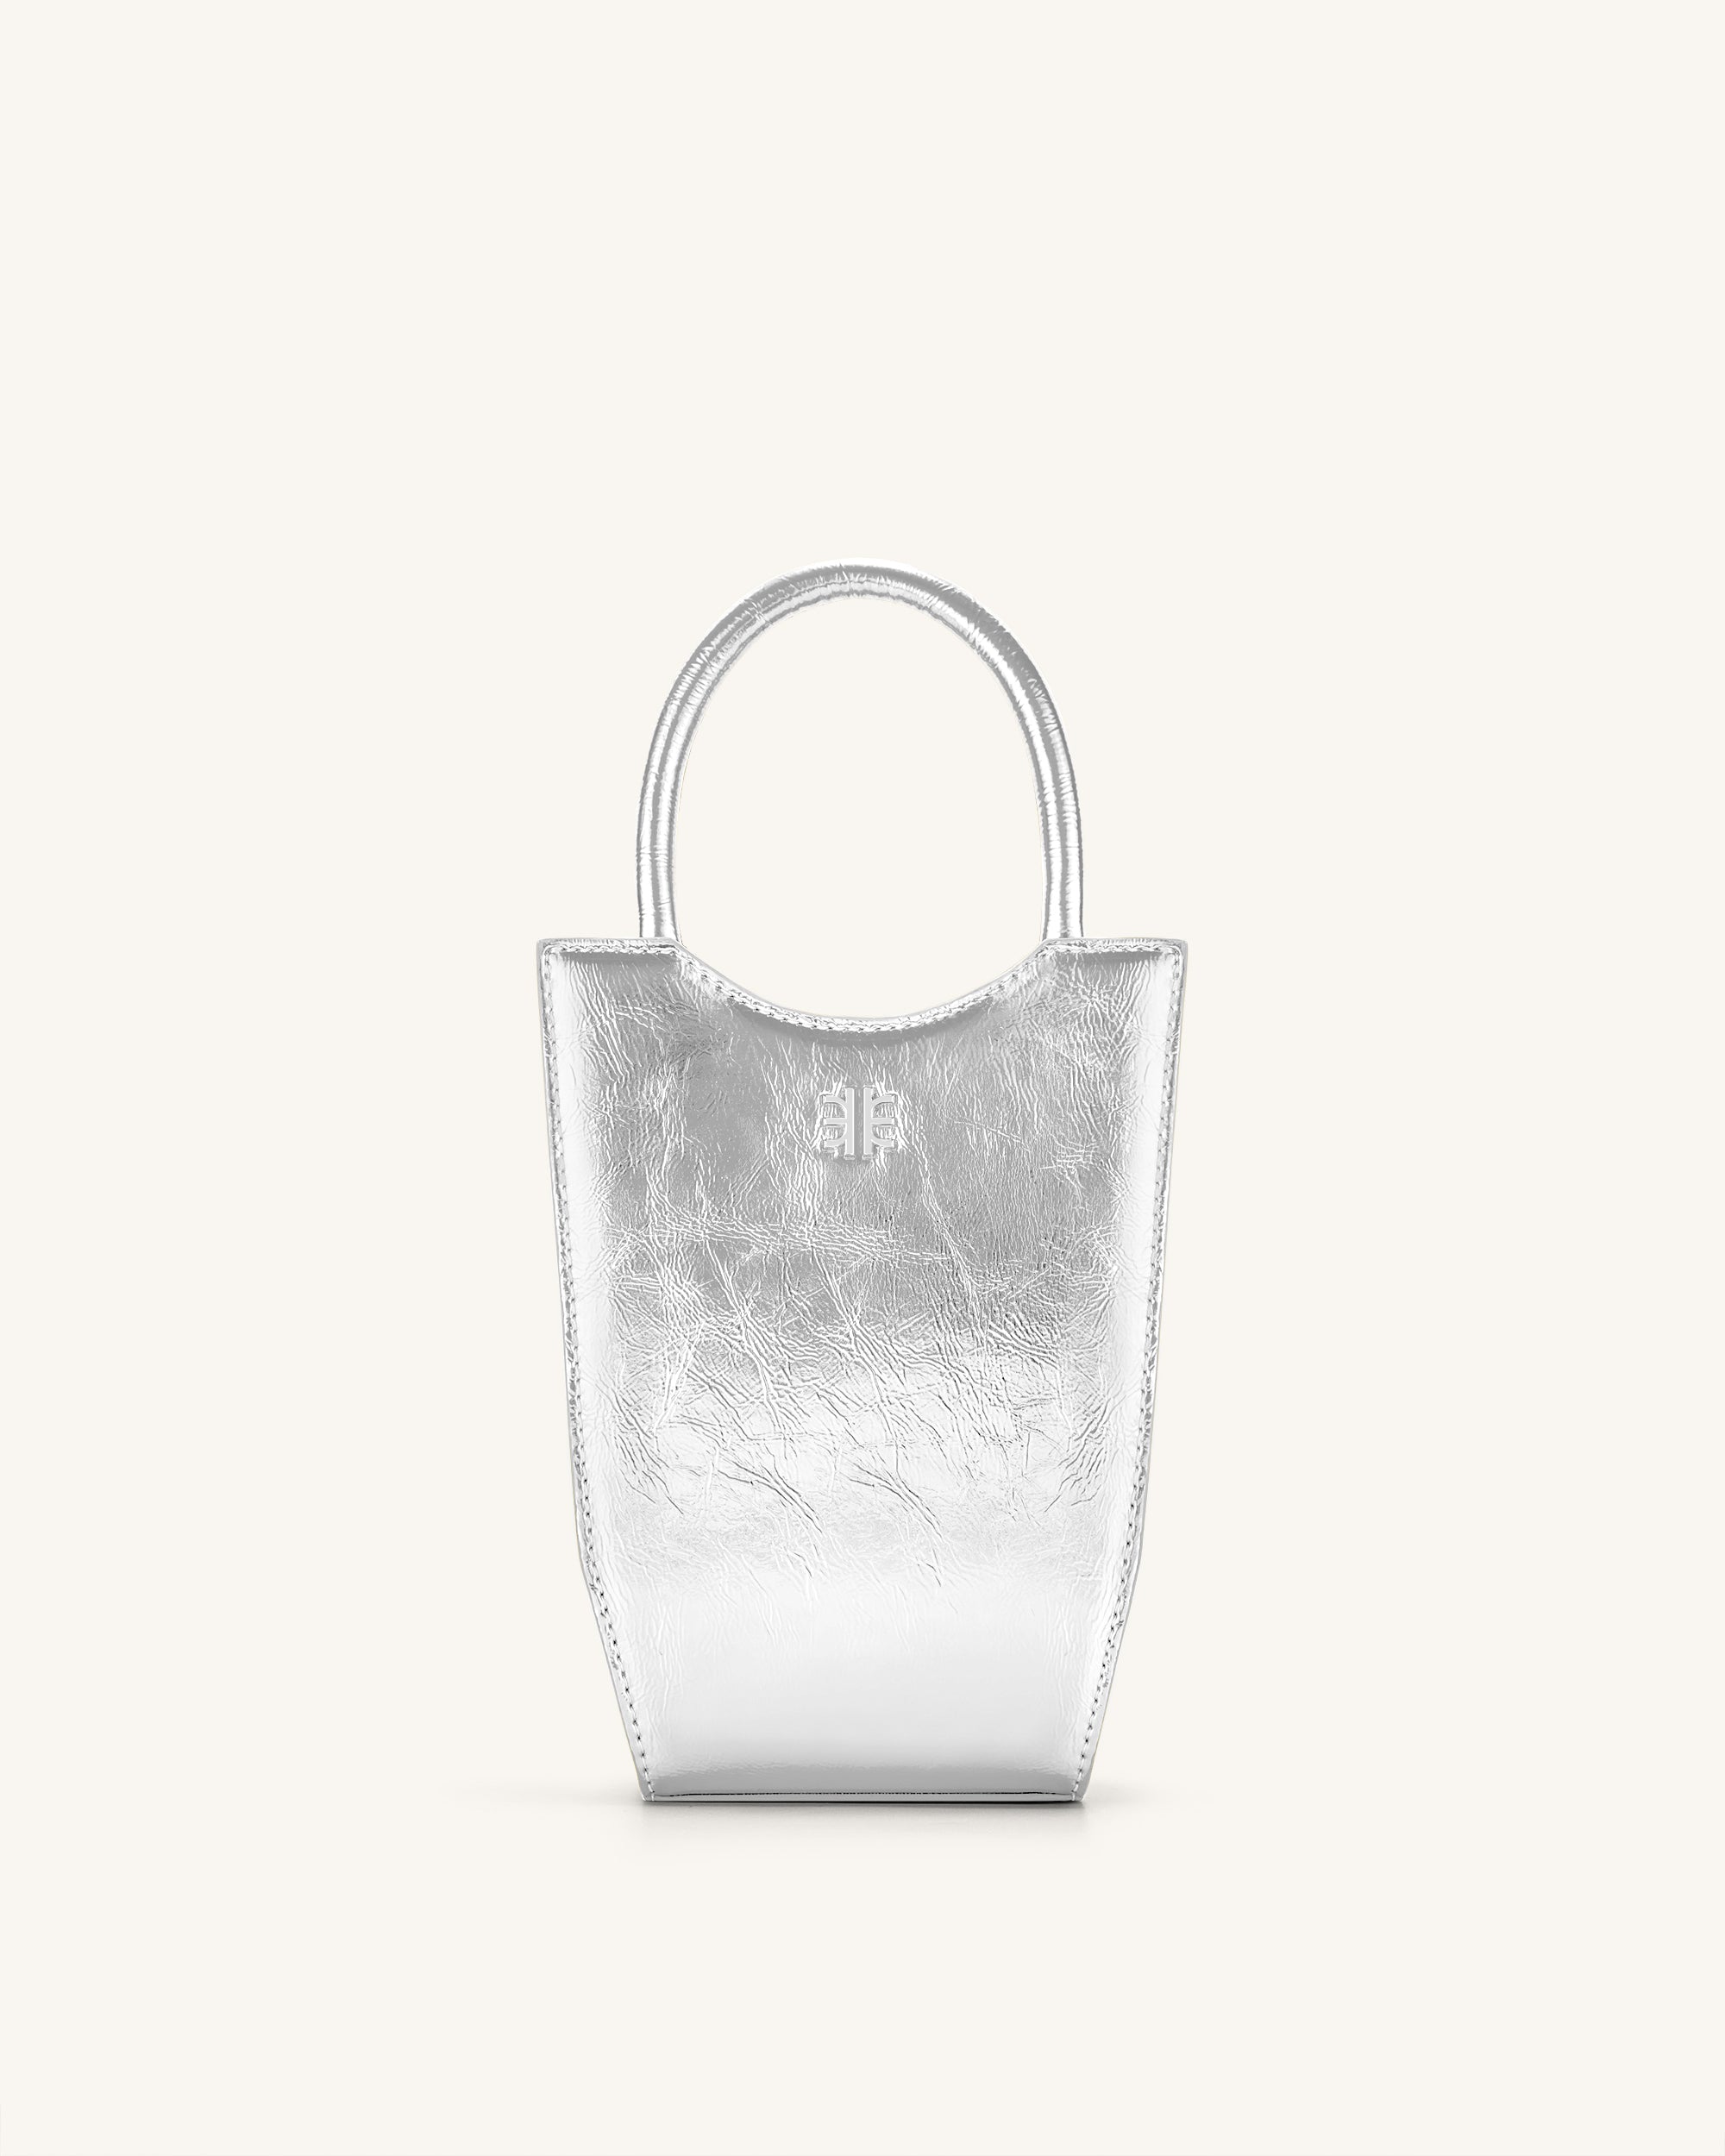 Gabbi Bag -Ice - Fashion Women Vegan Bag Online Shopping - JW Pei